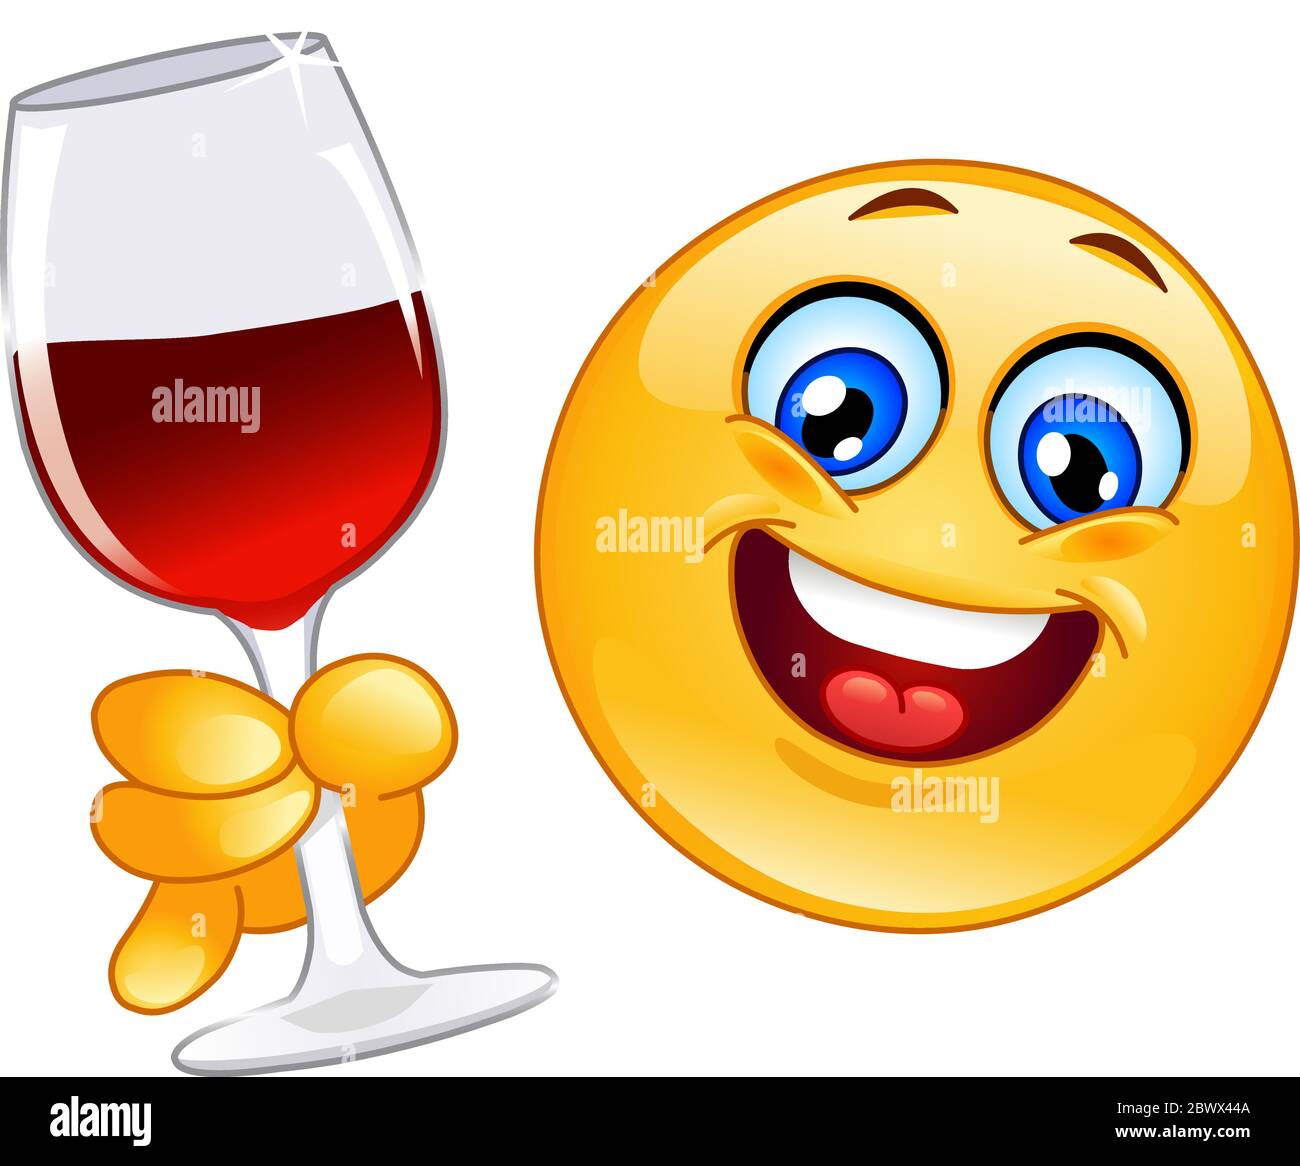 Jajaja usa el emoji de monuculo y copa de vino al final de una oración -  🐒🍷